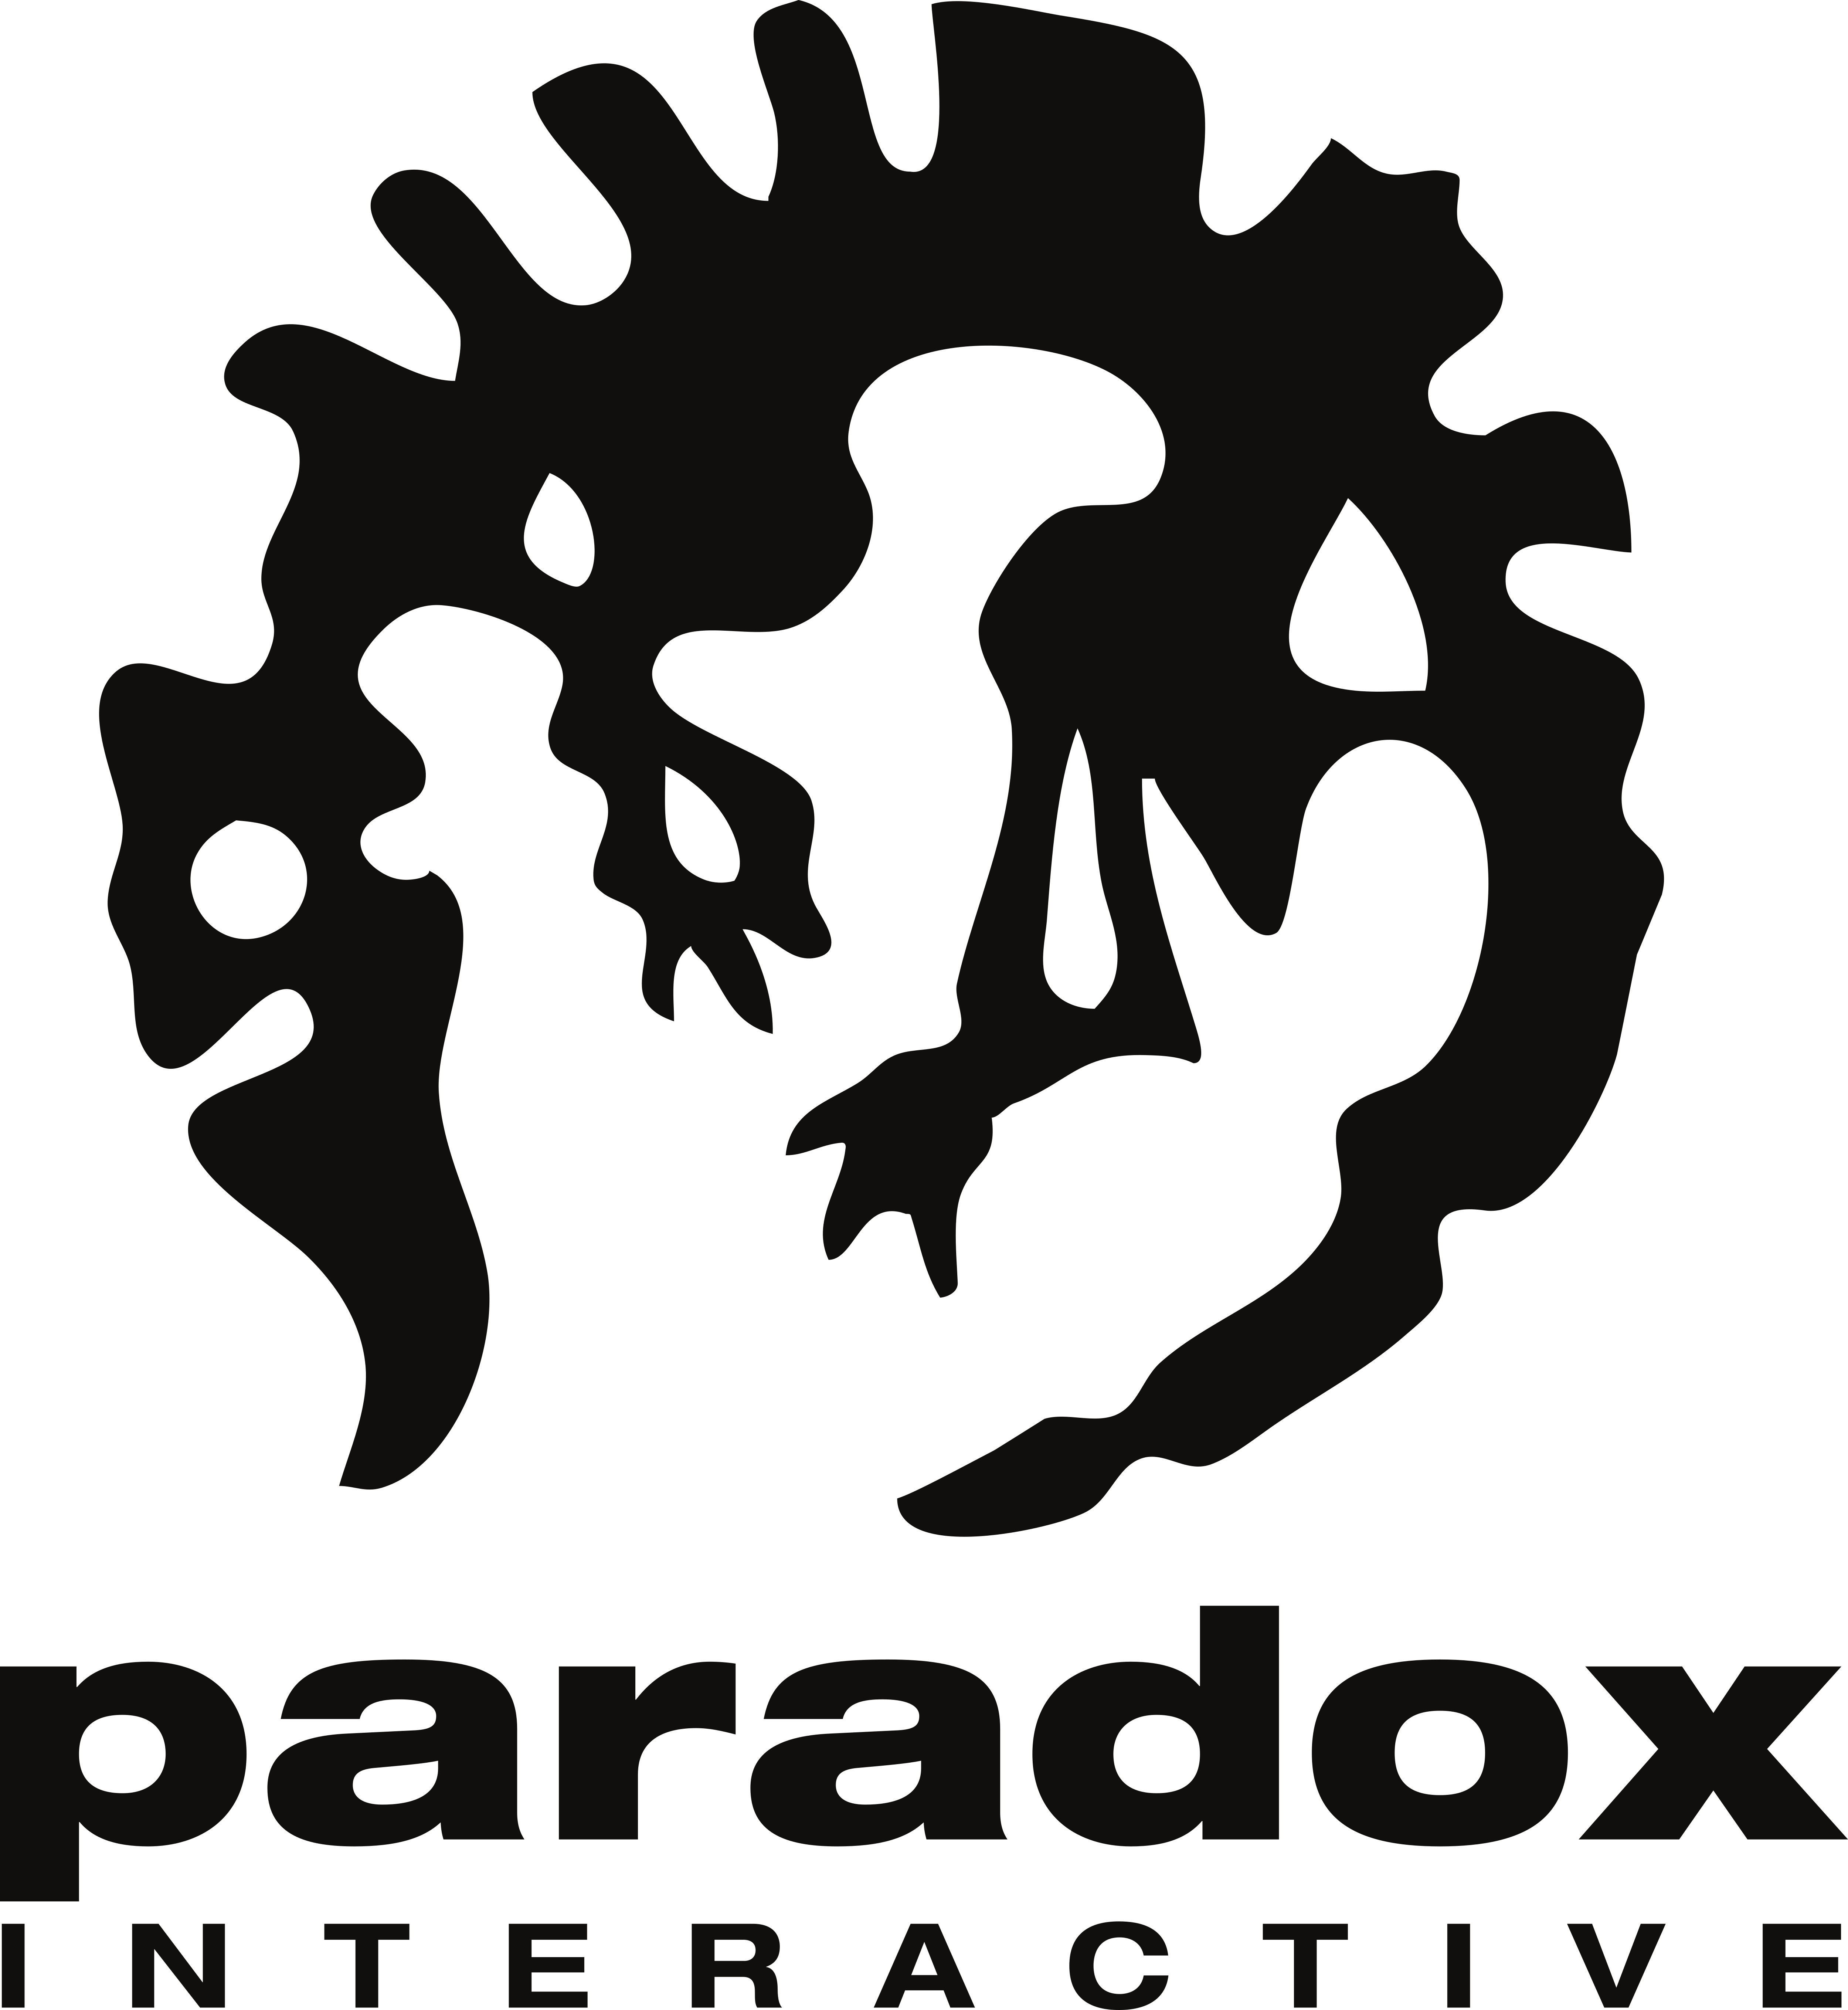 Shadowrun: Hong Kong - Extended Edition - Paradox Interactive